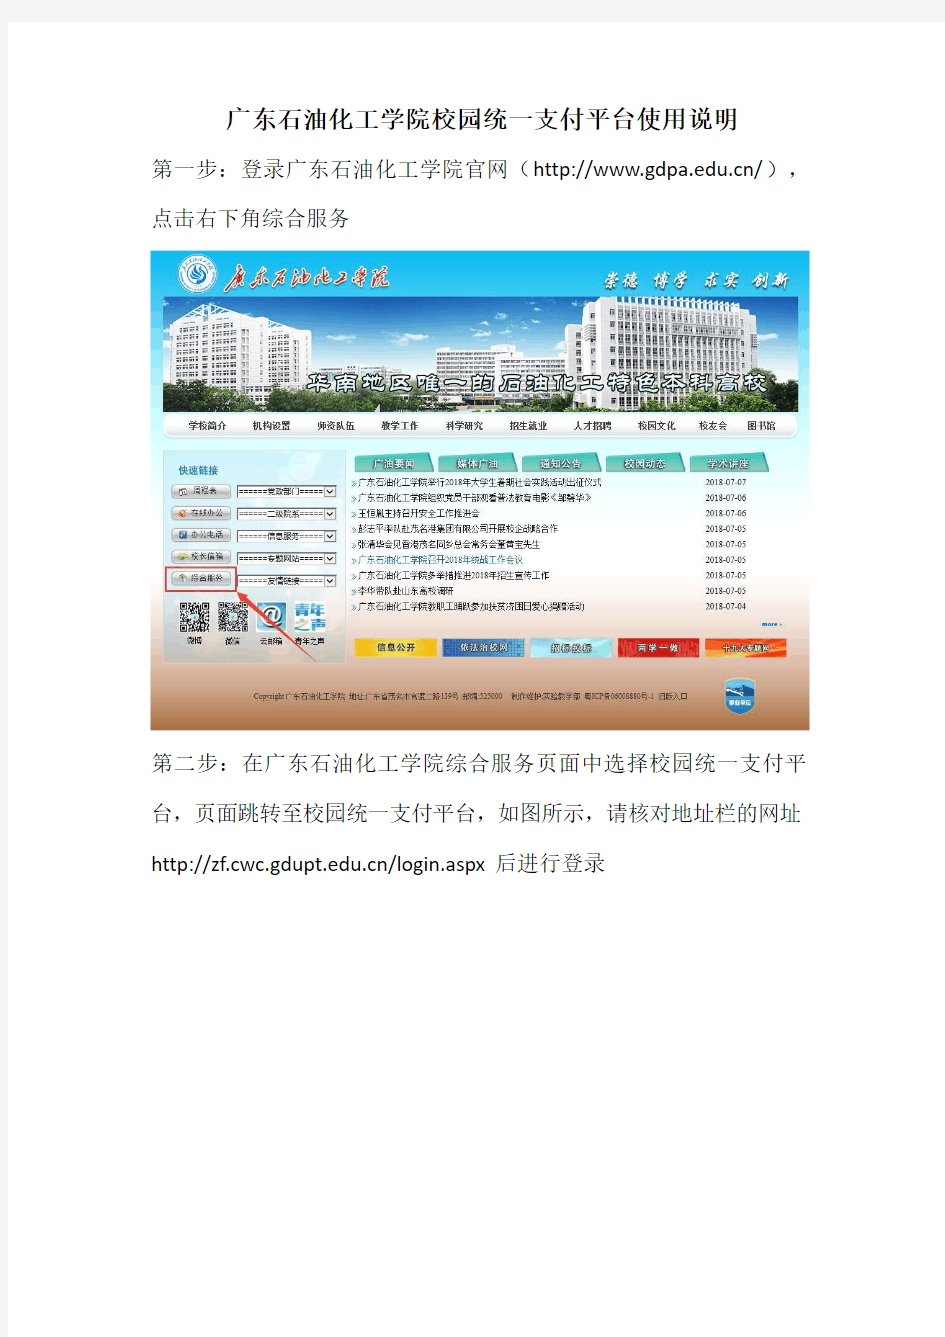 广东石油化工学院校园统一支付平台使用说明